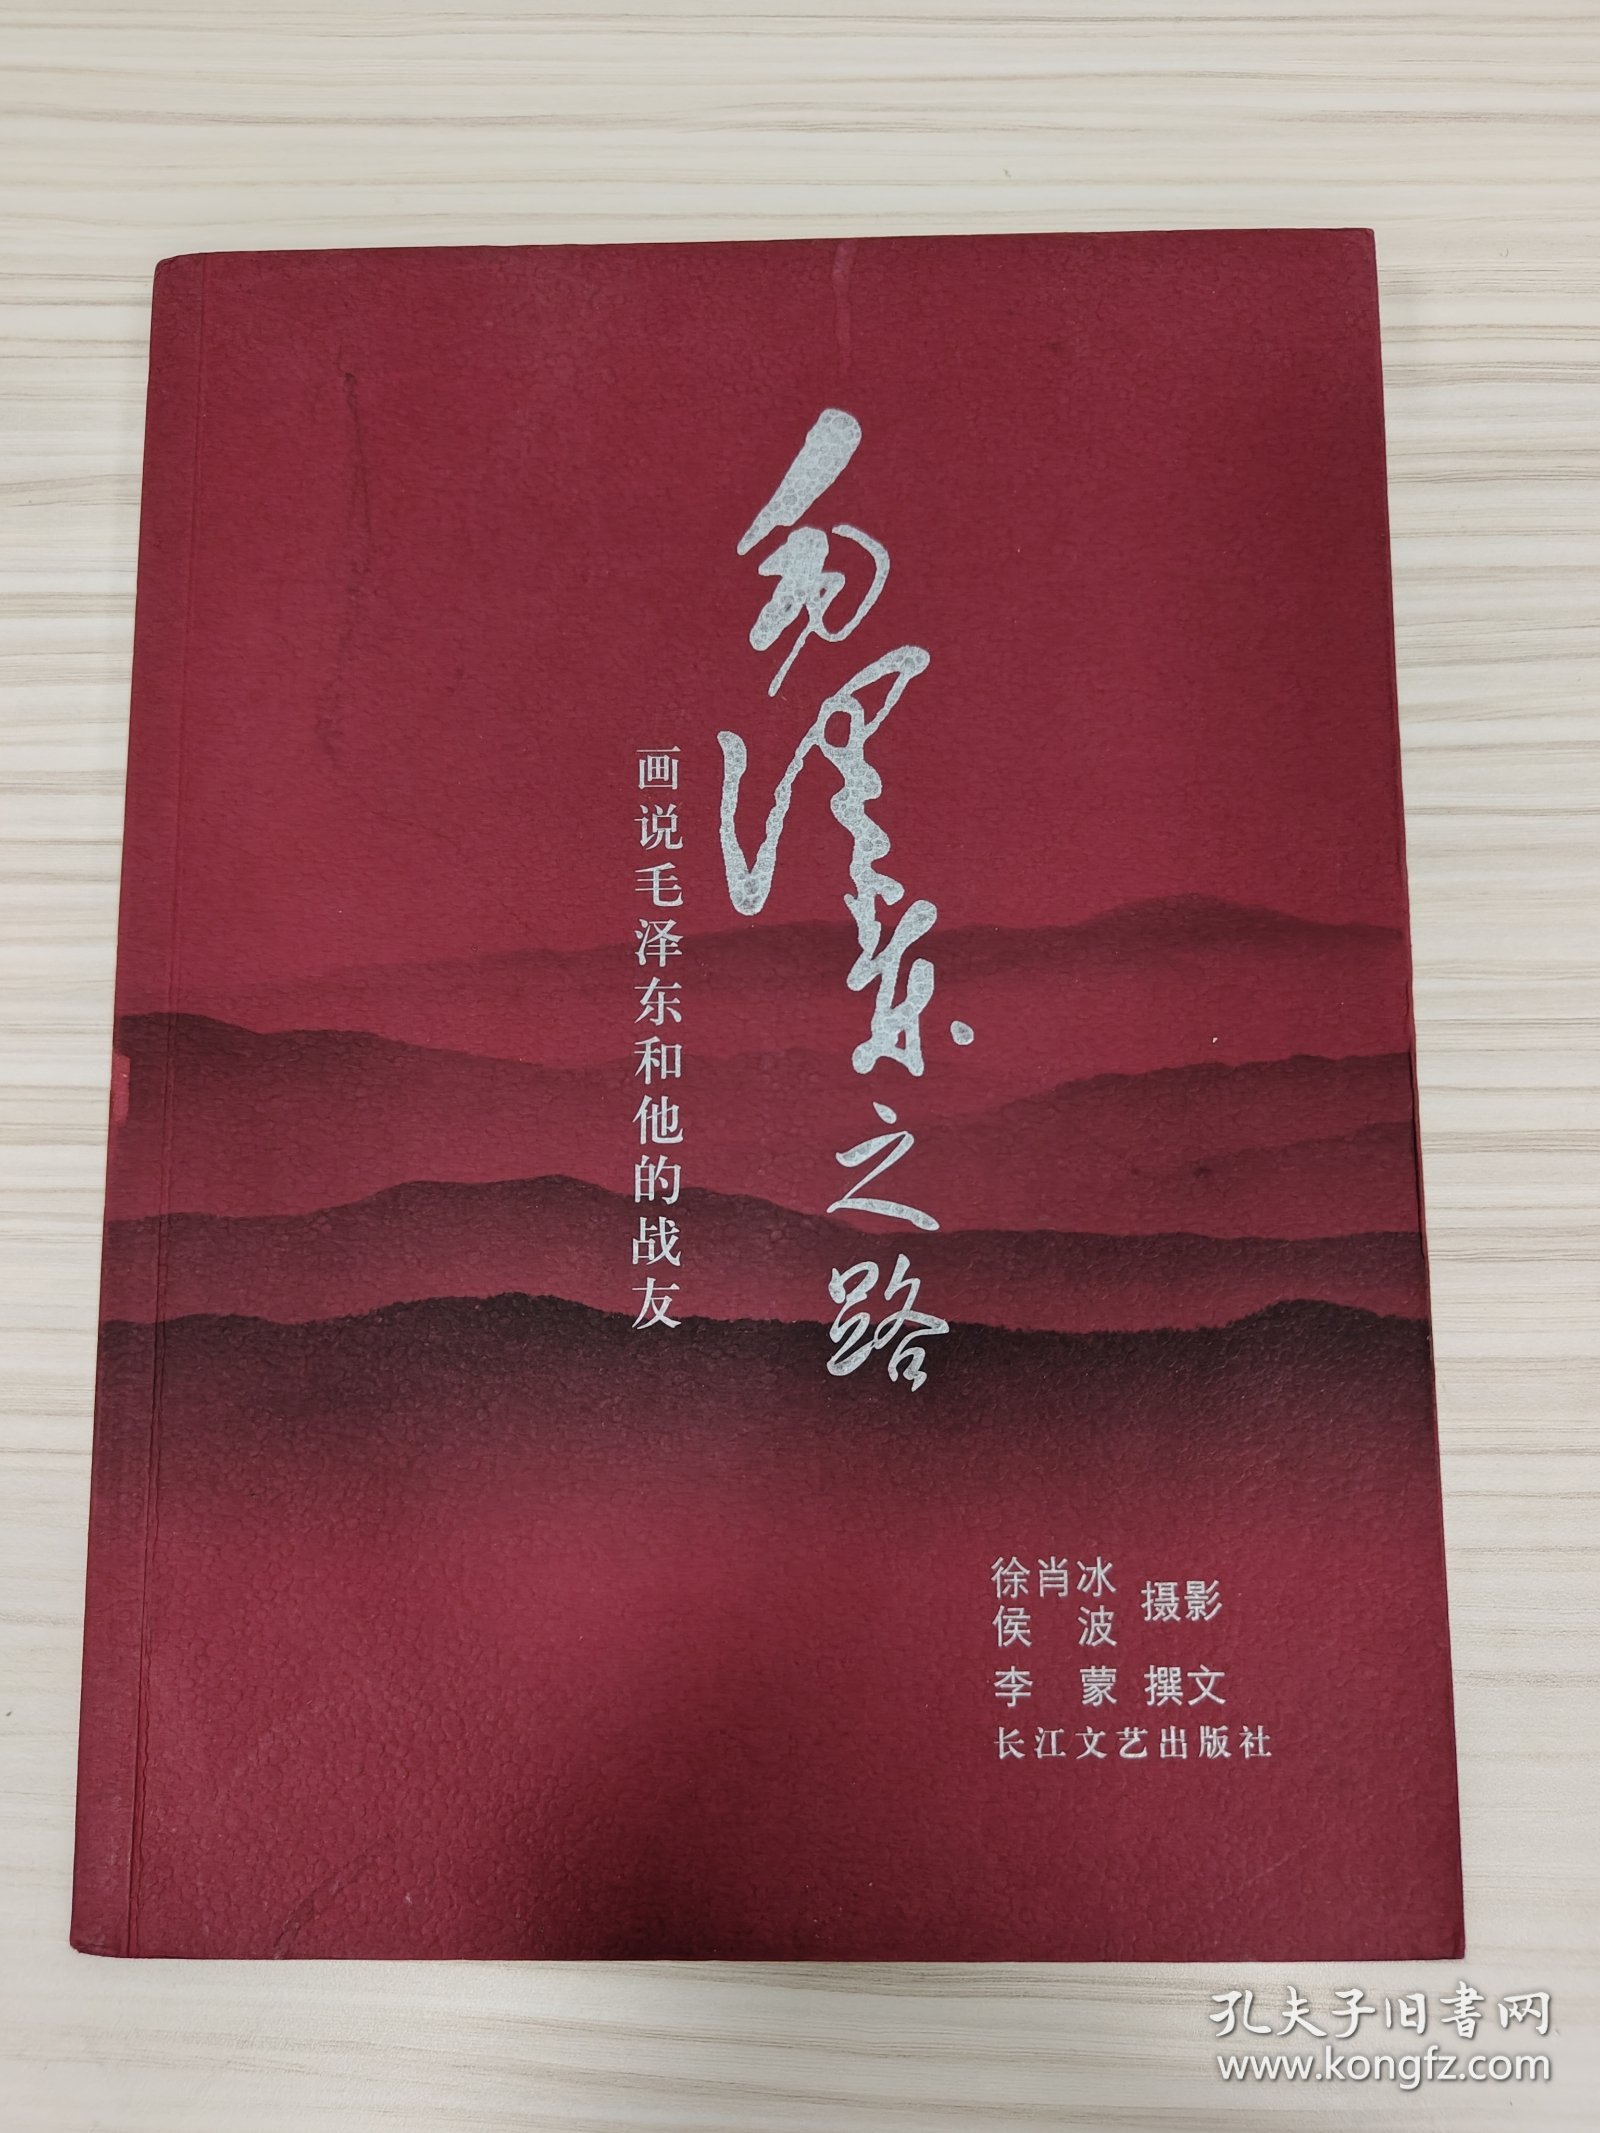 徐肖冰、侯波 亲笔签名本《毛泽东之路》，平装厚册，品相如图